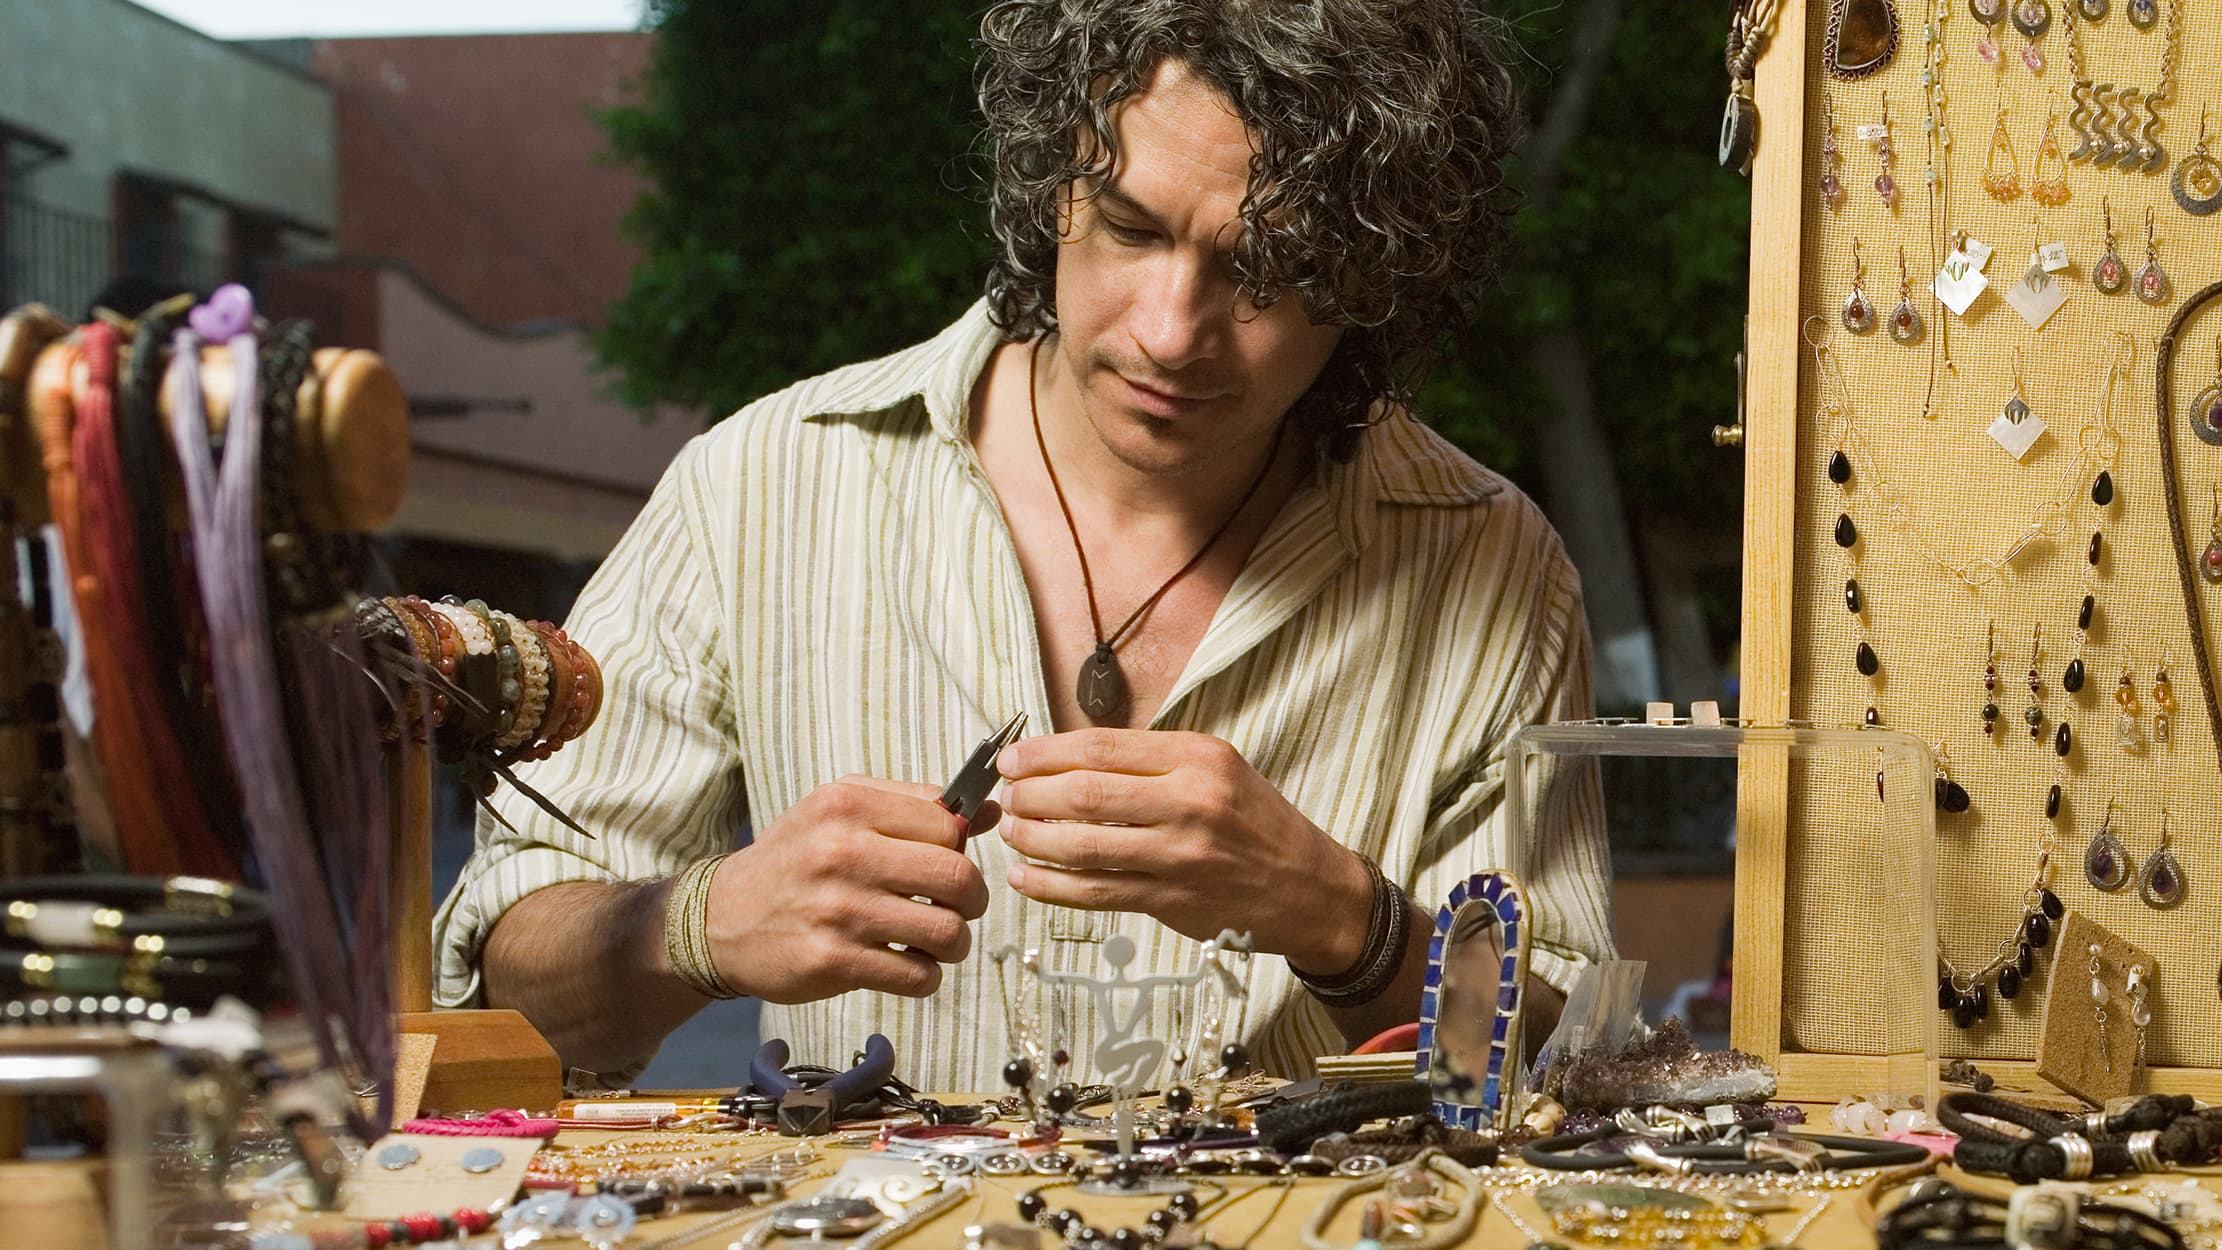 Een man maakt juwelen en vraagt zich af hoe hij een onderneming kan starten zonder geld